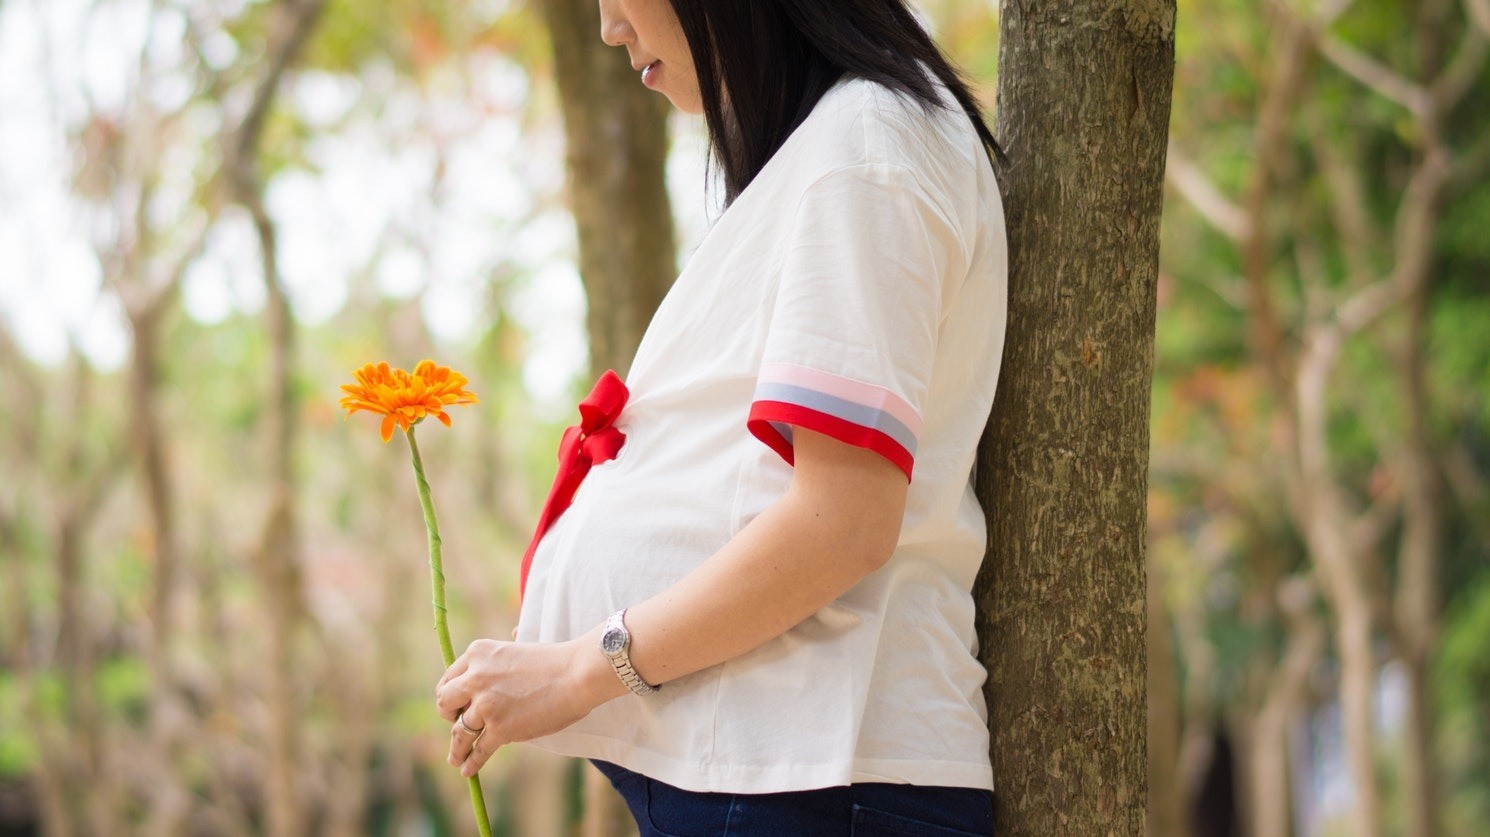 Симптомы на ранних сроках беременности: чего стоит бояться?